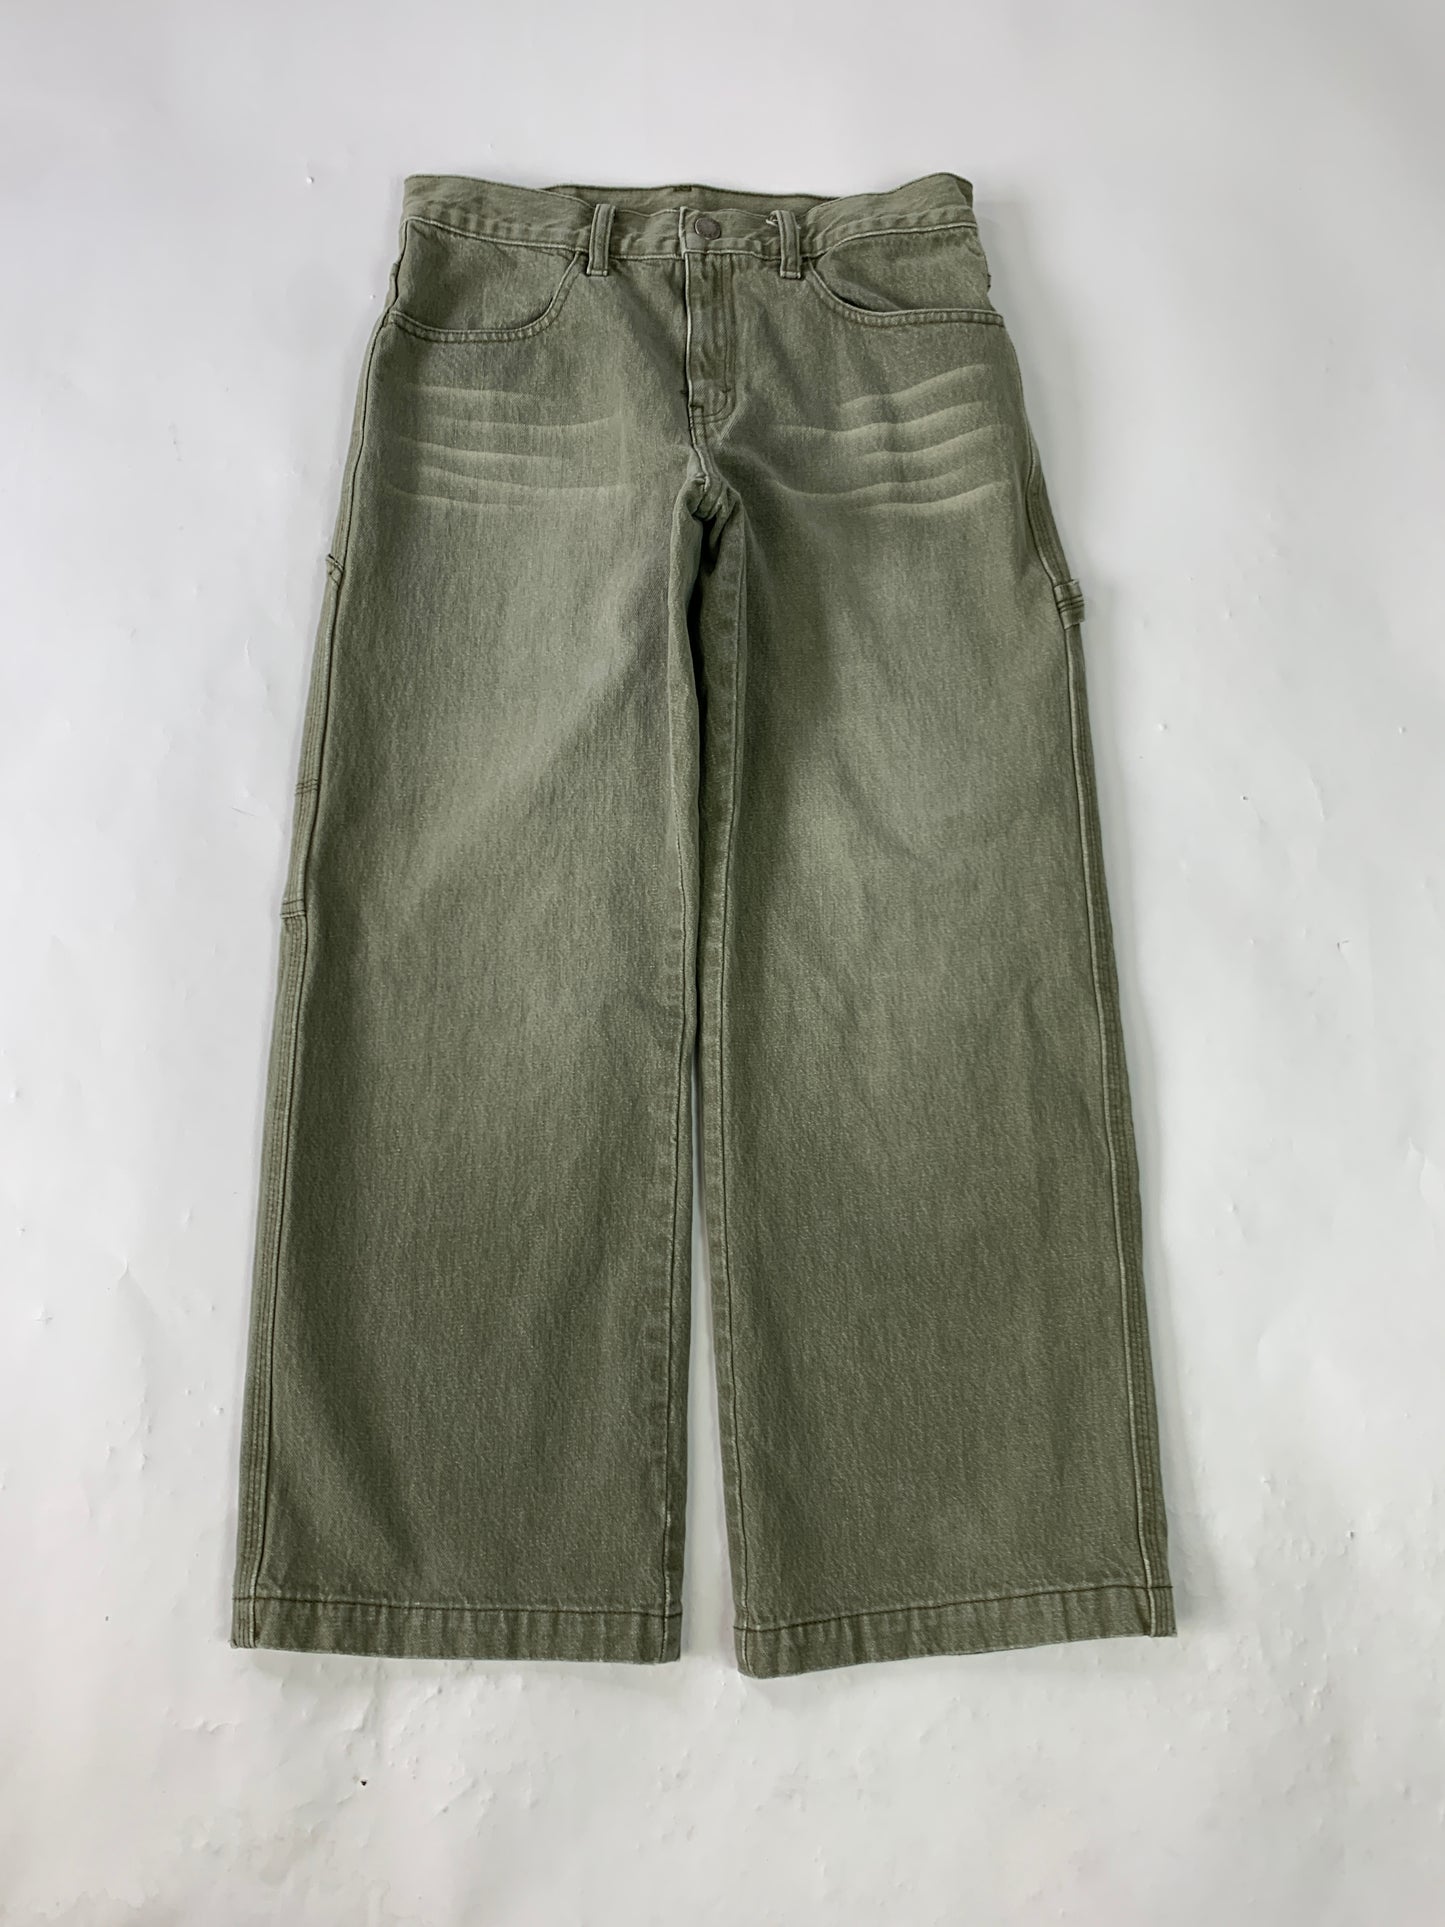 Levis Olive Carpenter Vintage Jeans - 28